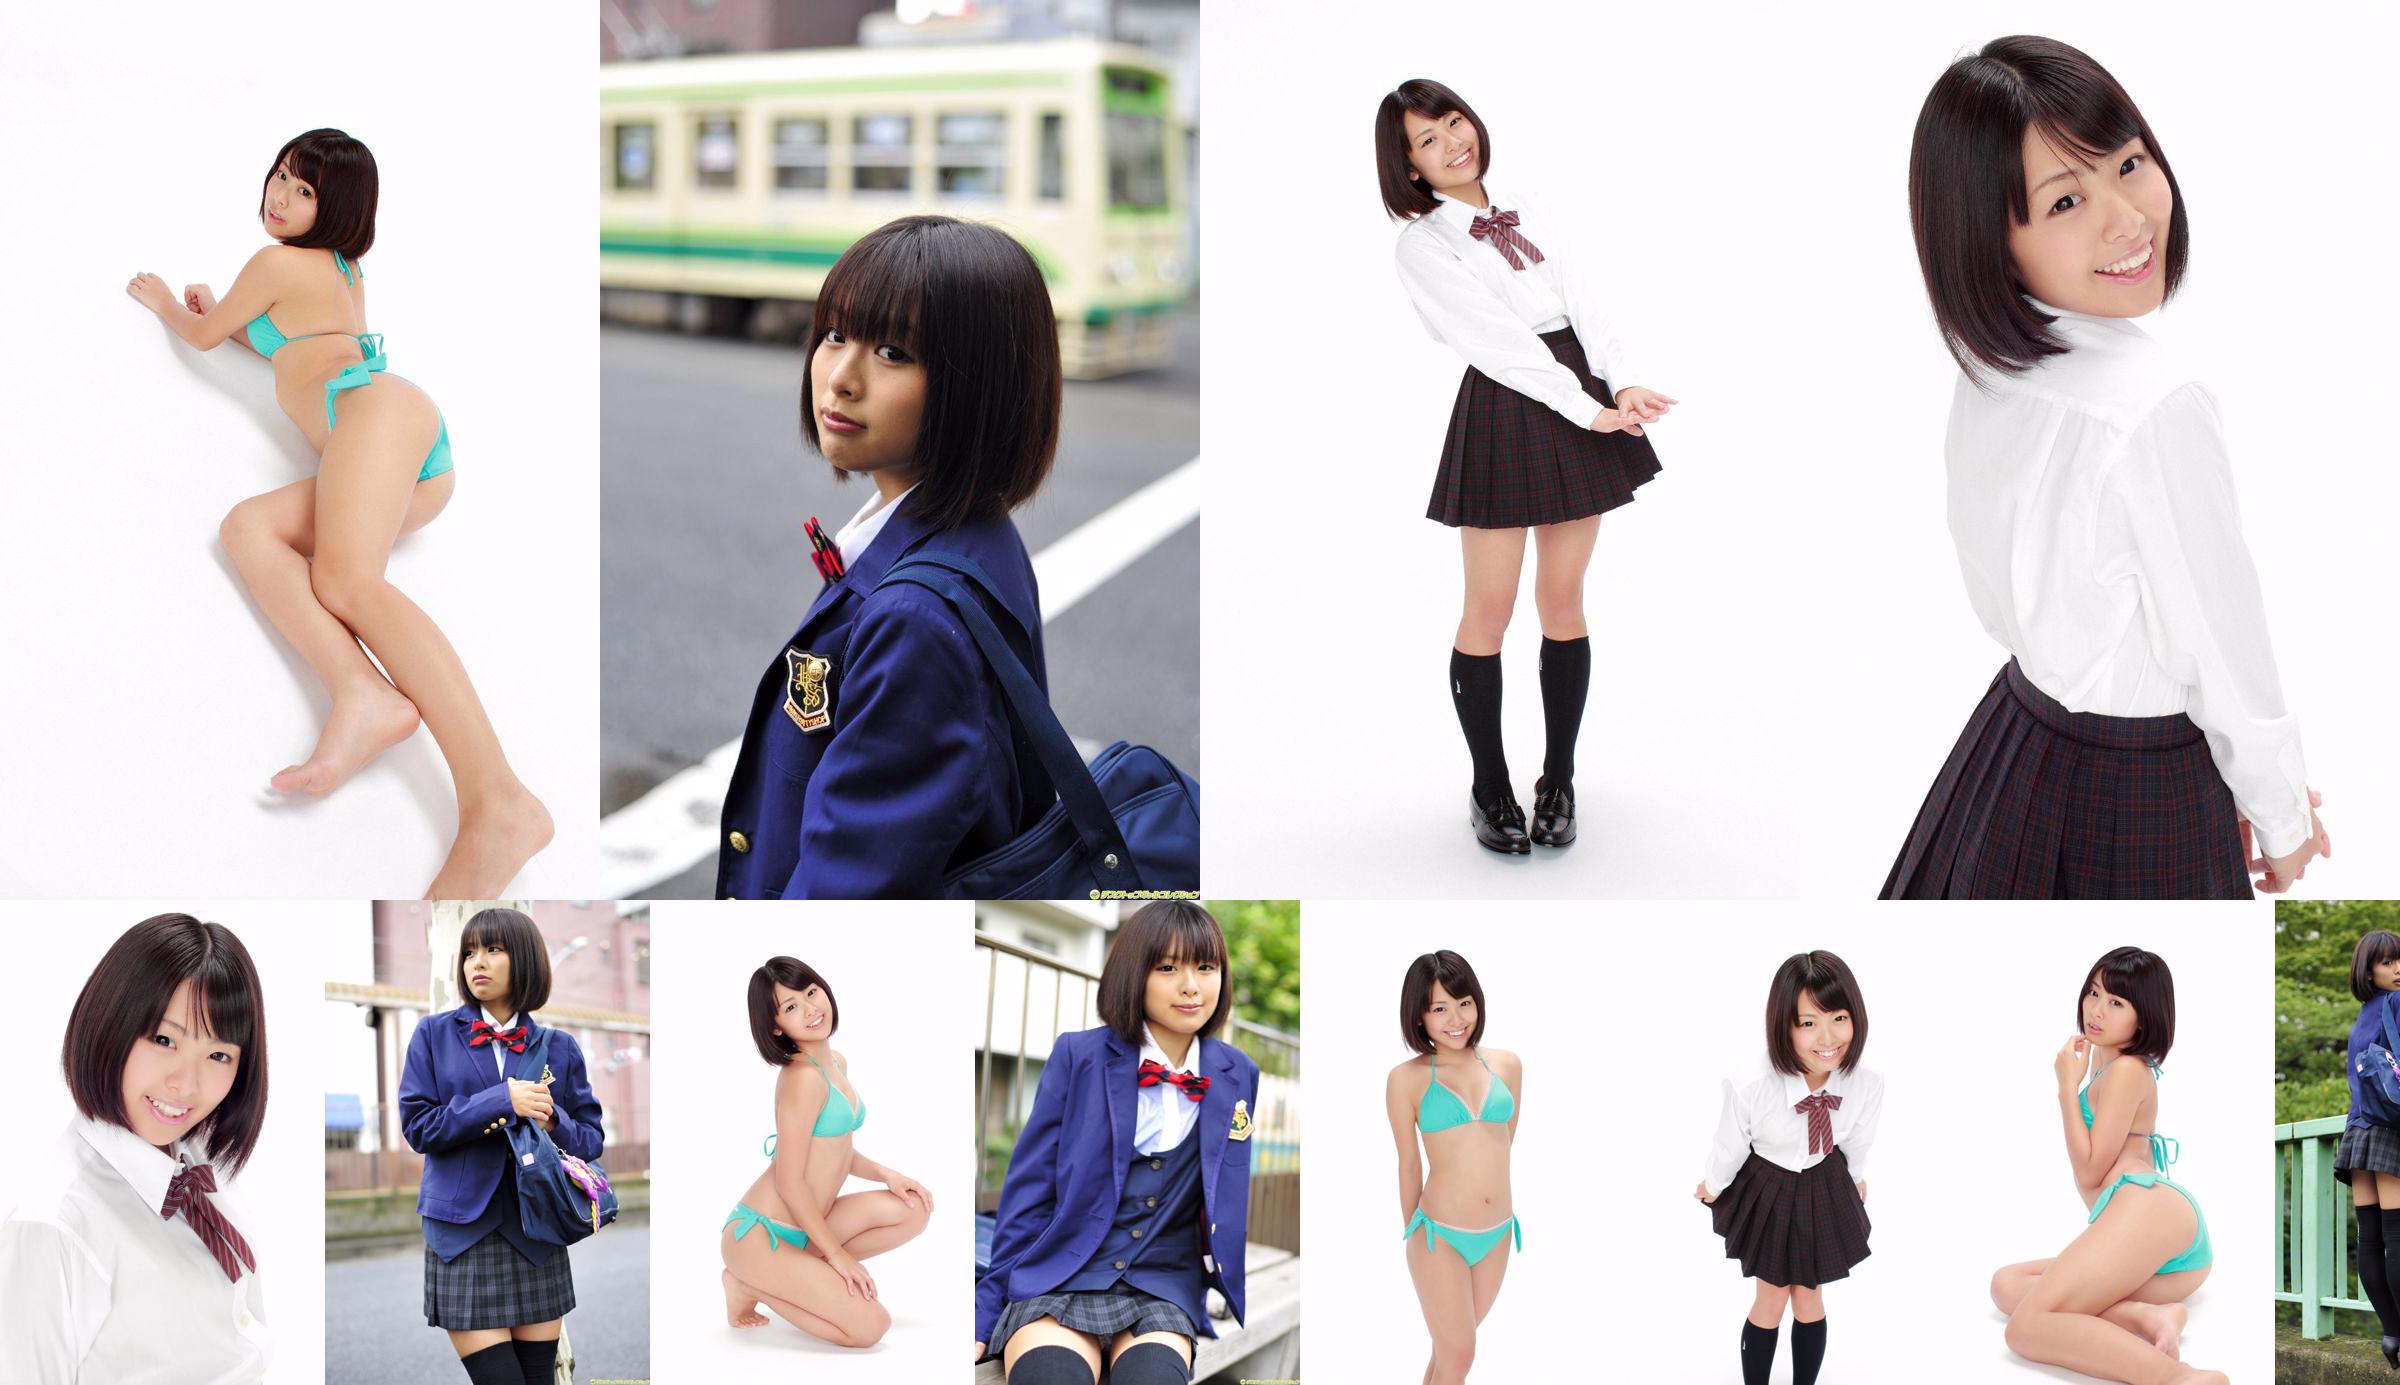 [DGC] NO.992 Ran Sakai Ran Sakai Uniform Beautiful Girl Heaven No.0311be Pagina 4